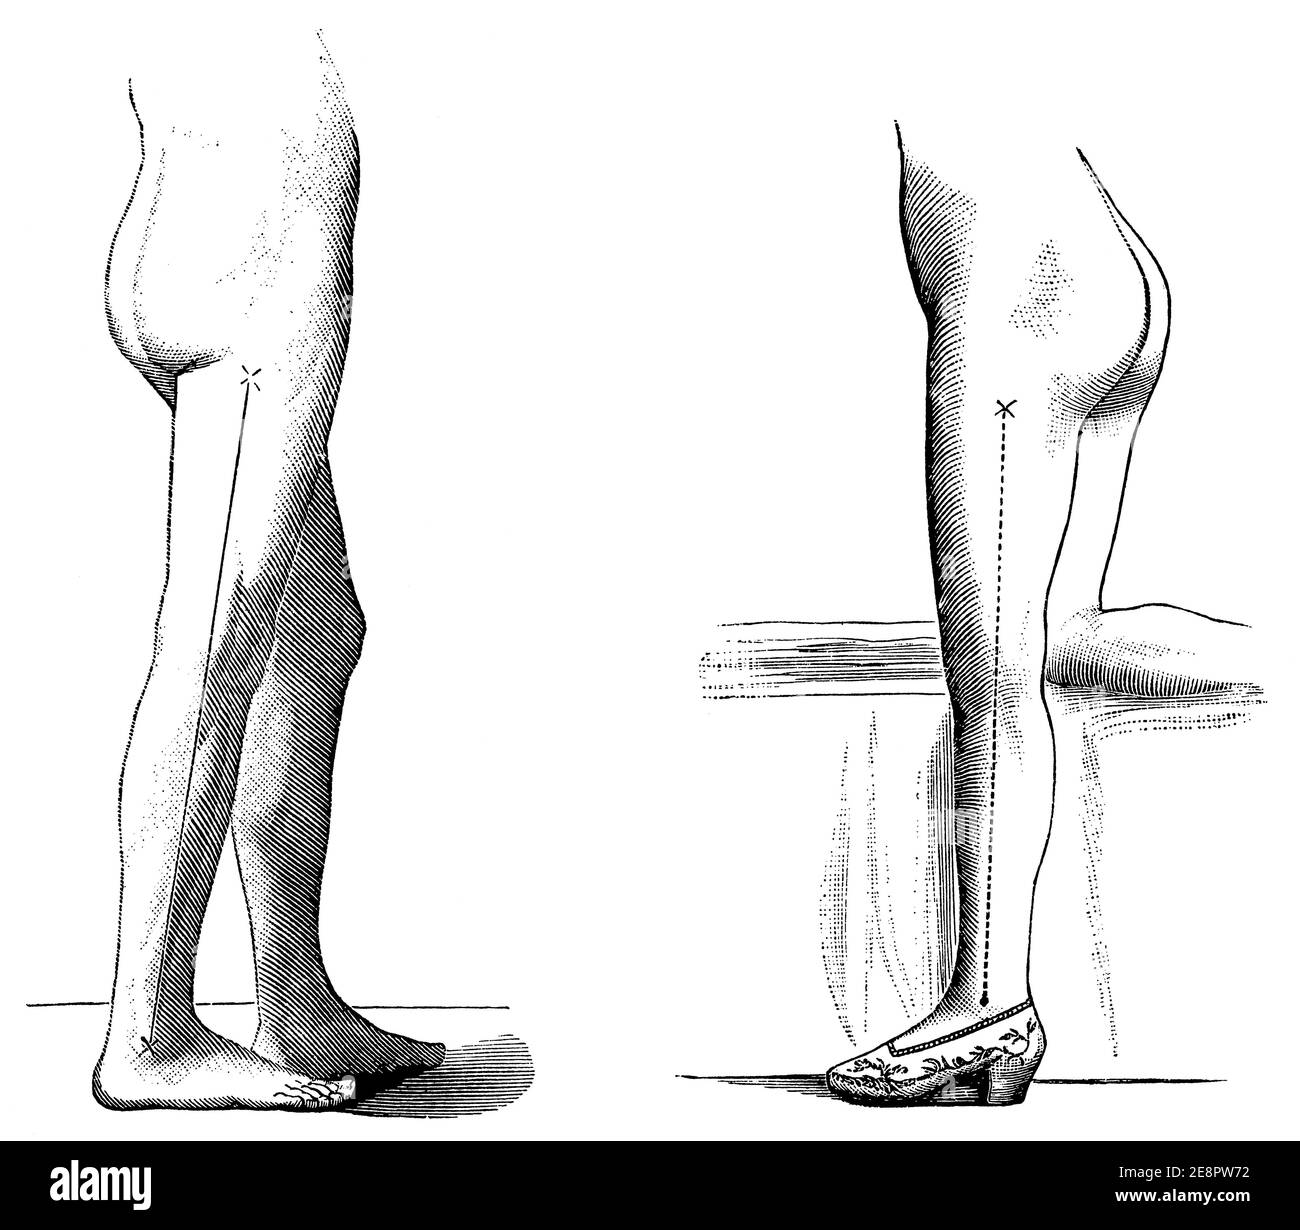 Beispiele für die Position der Füße einer Person mit und ohne Schuhe. Illustration des 19. Jahrhunderts. Deutschland. Weißer Hintergrund. Stockfoto